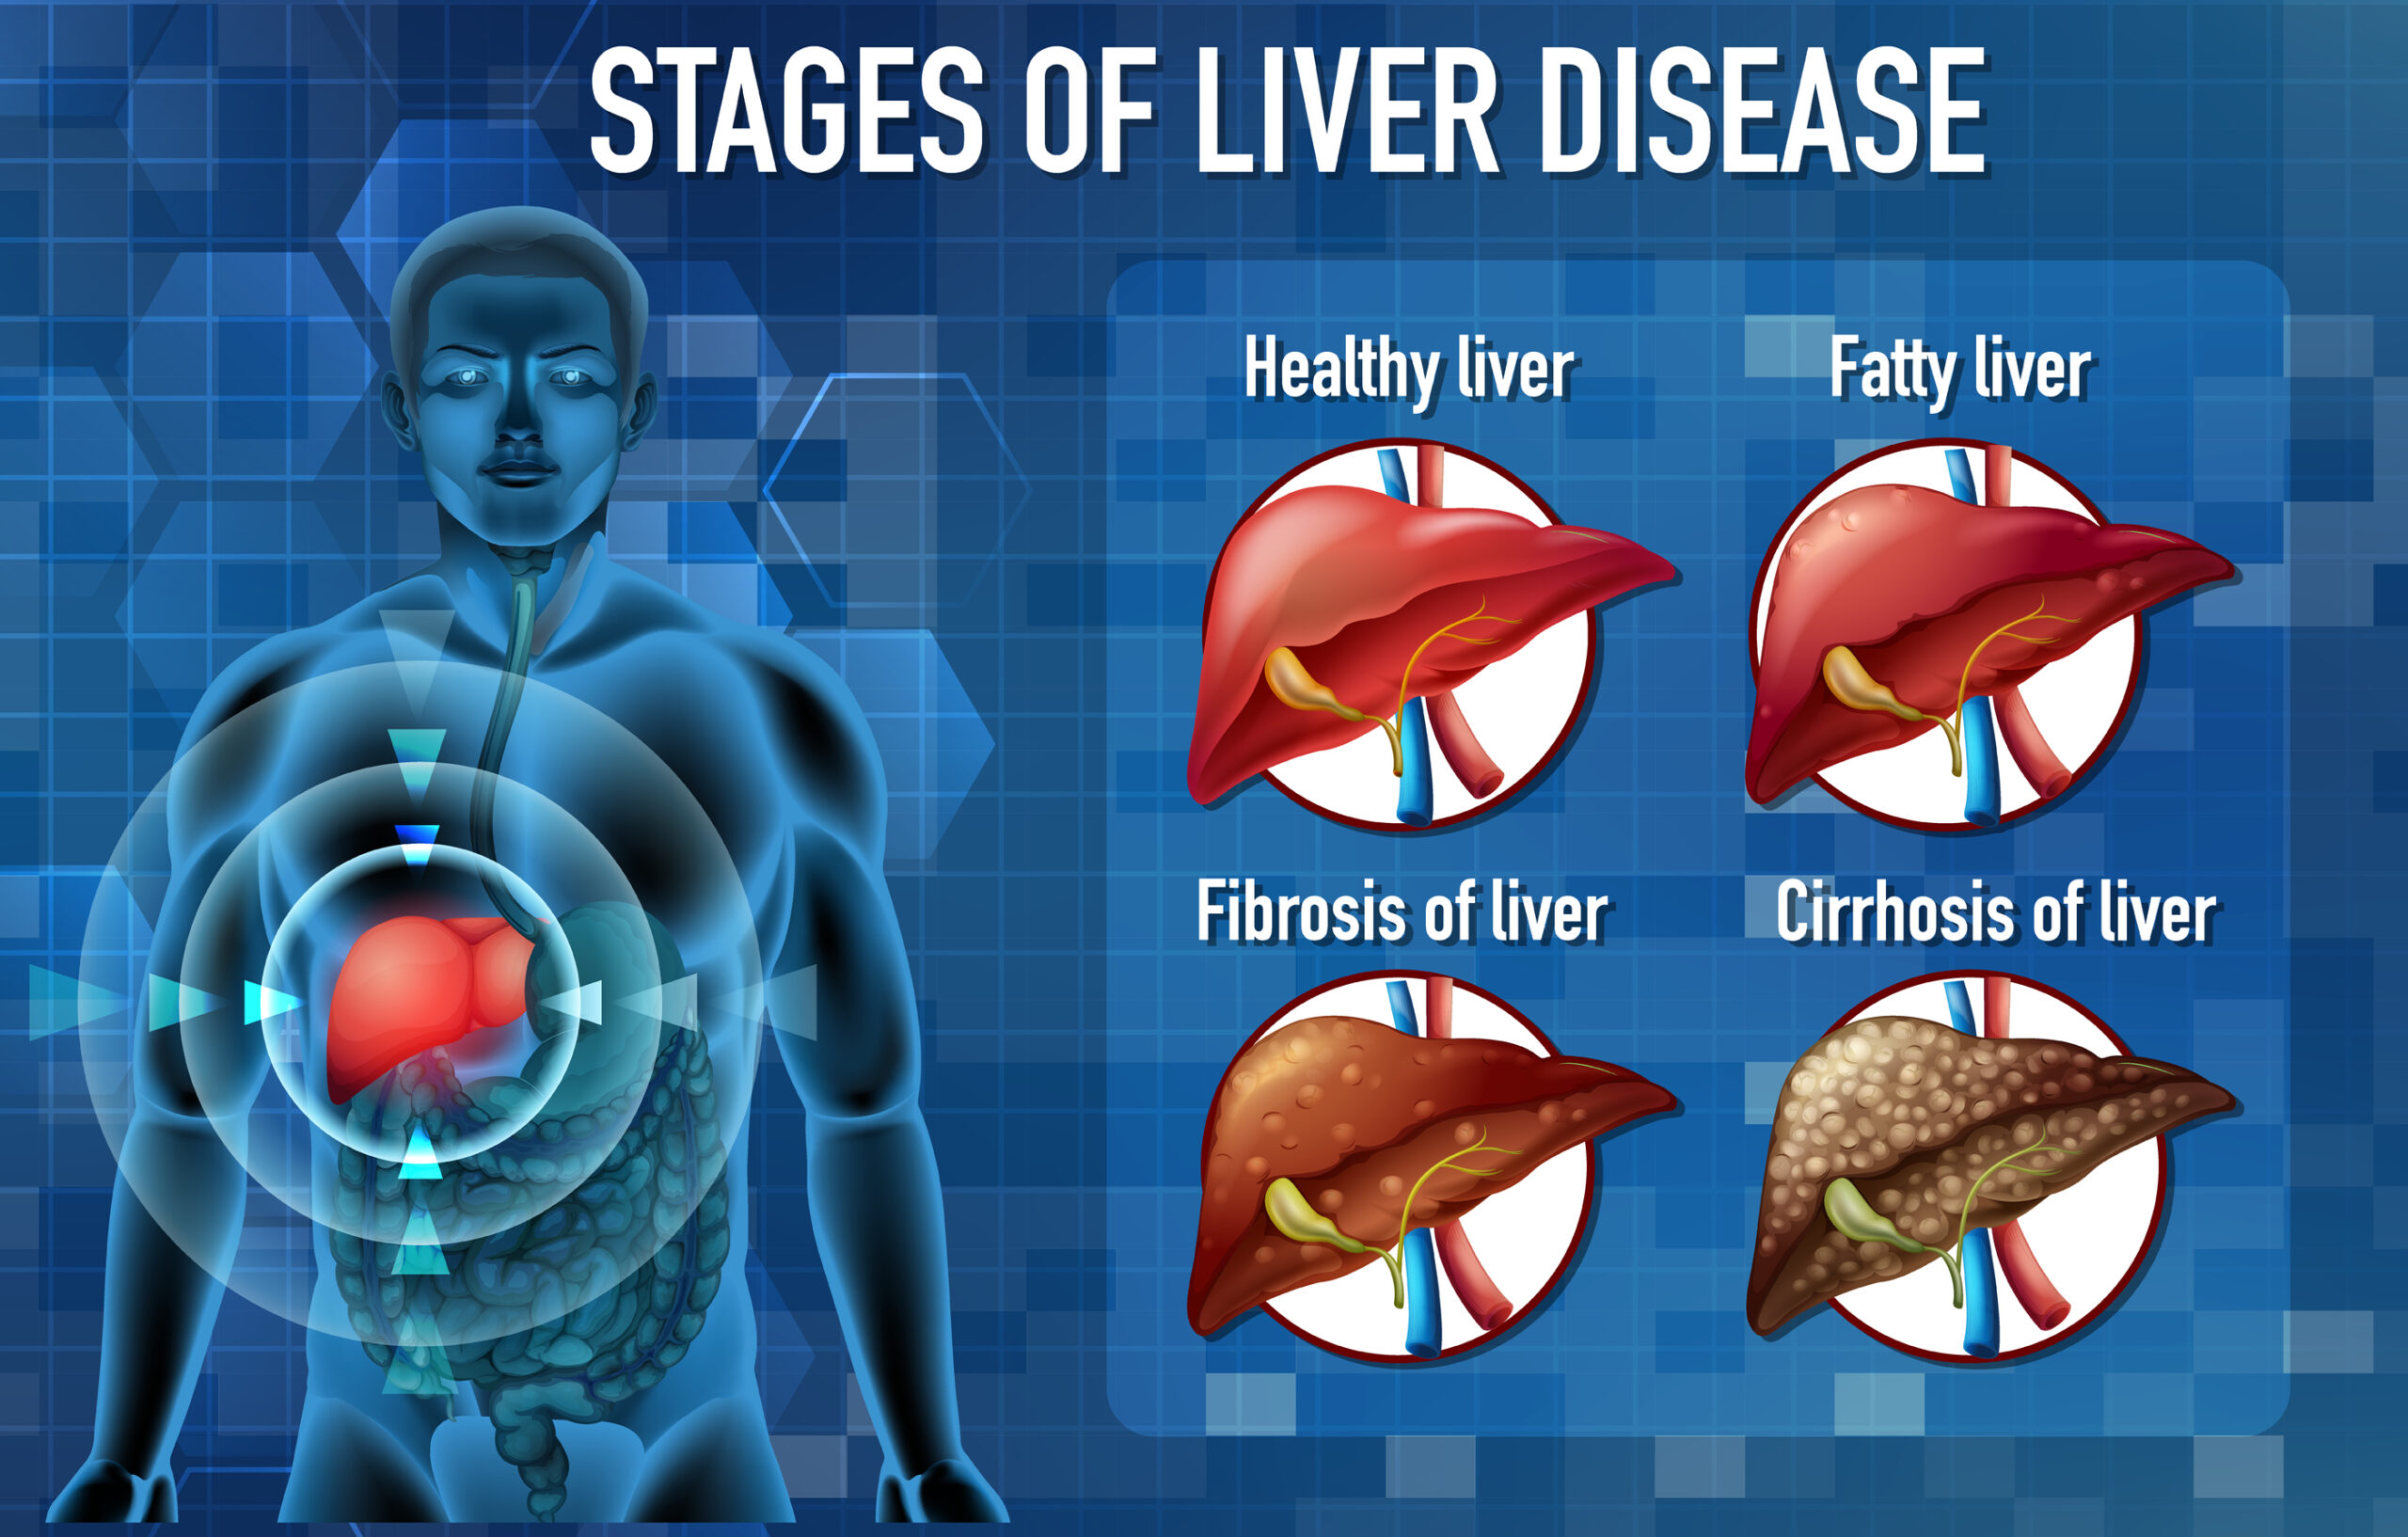 A list of 7 fatty liver symptoms